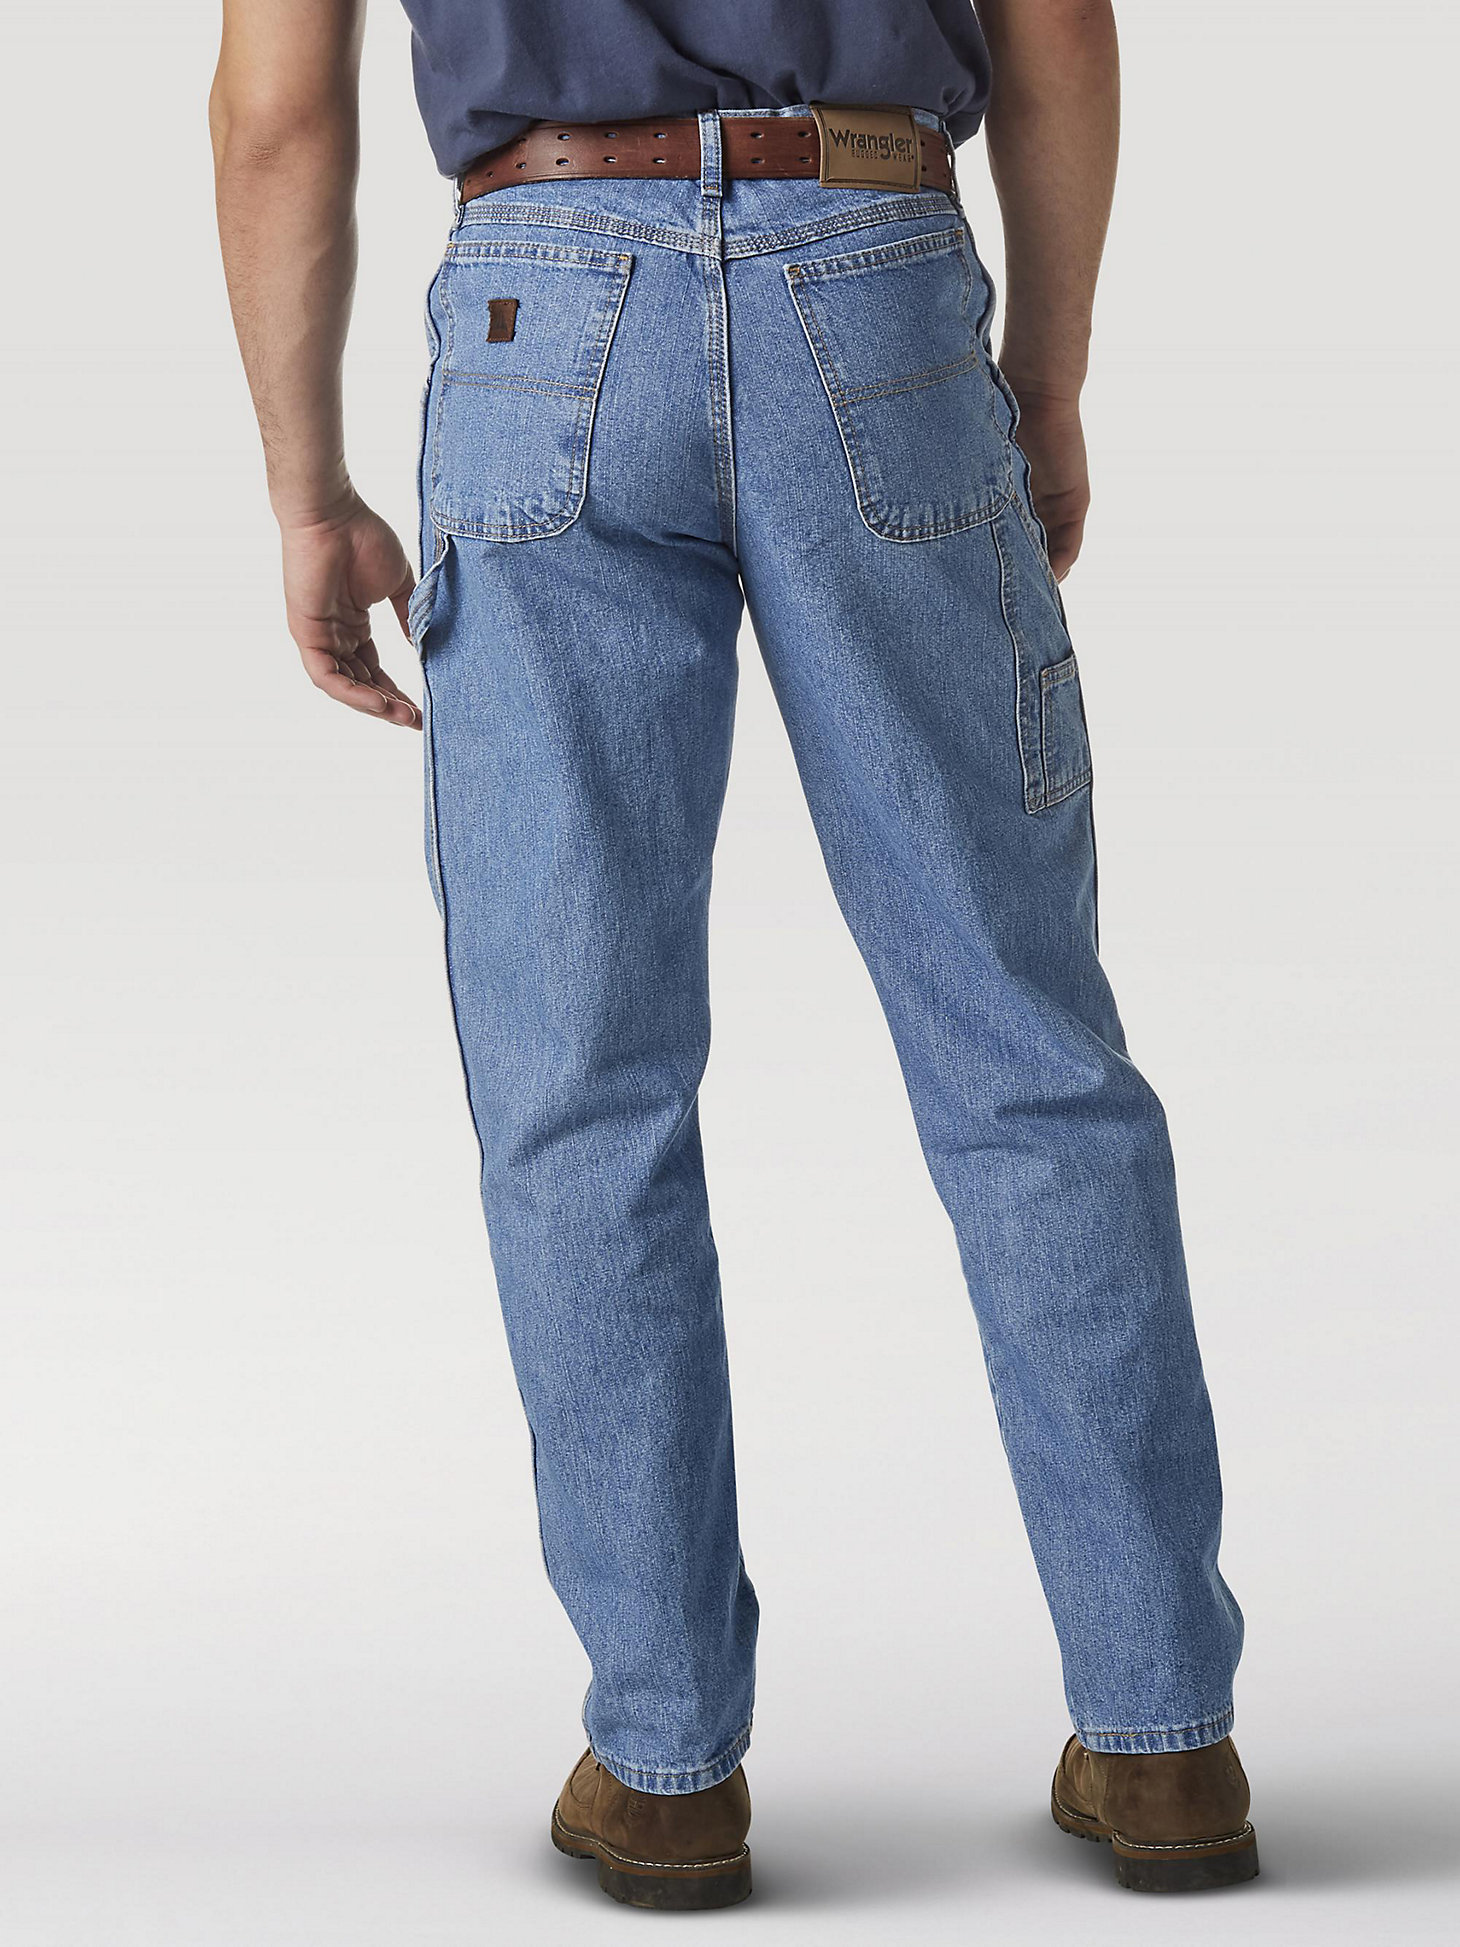 Wrangler Rugged Wear® Carpenter Jean in Vintage Indigo alternative view 2